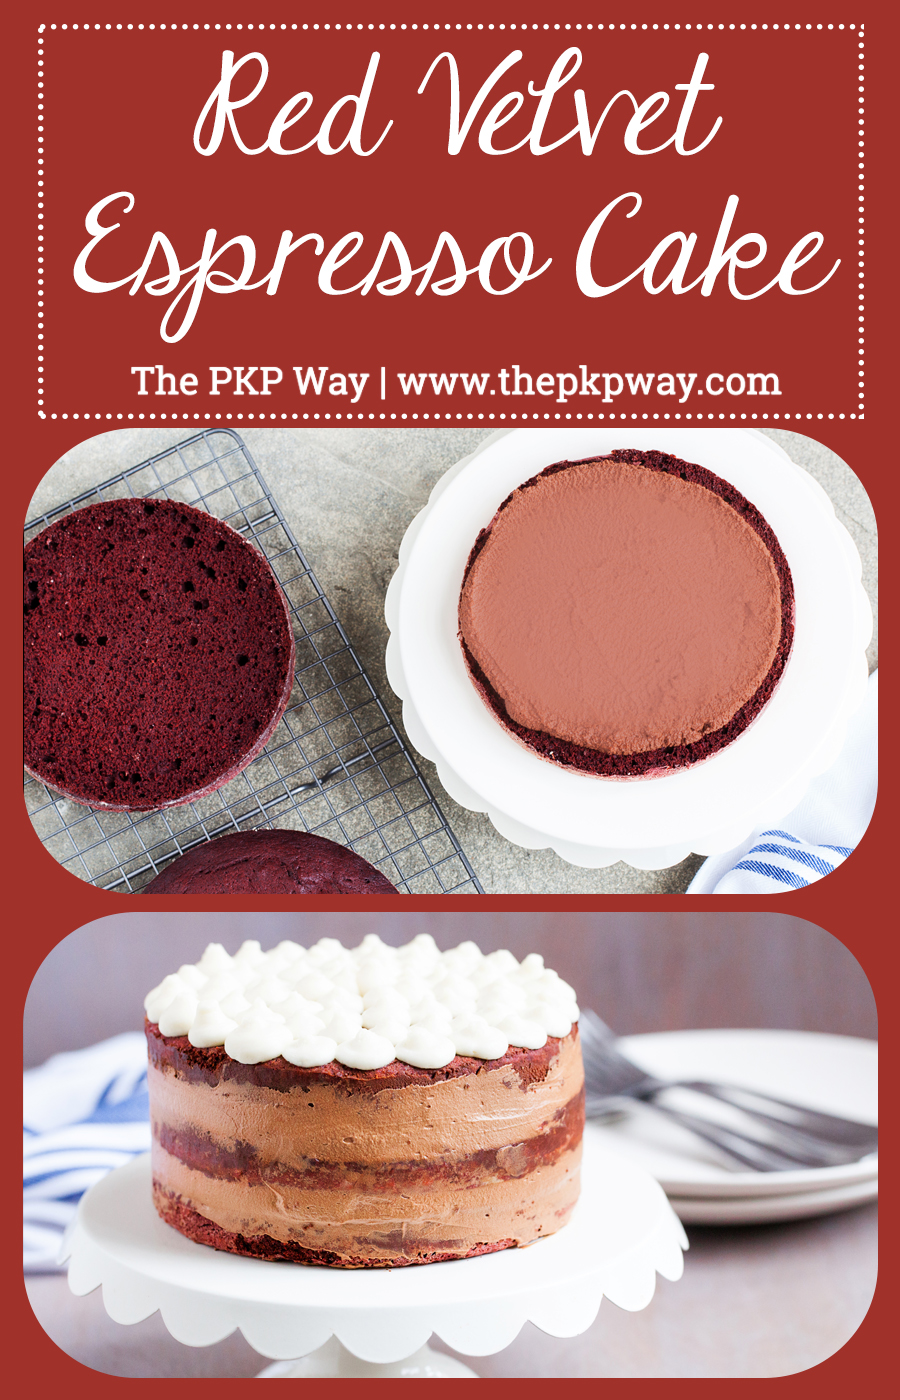 to-die-pro kombinaci, tento červený sametový Espresso dort má tři lahodné vrstvy červeného sametového dortu, naplněné načechraným espresso krémem mezi nimi,a přelité sladkou a pikantní smetanovou polevou!